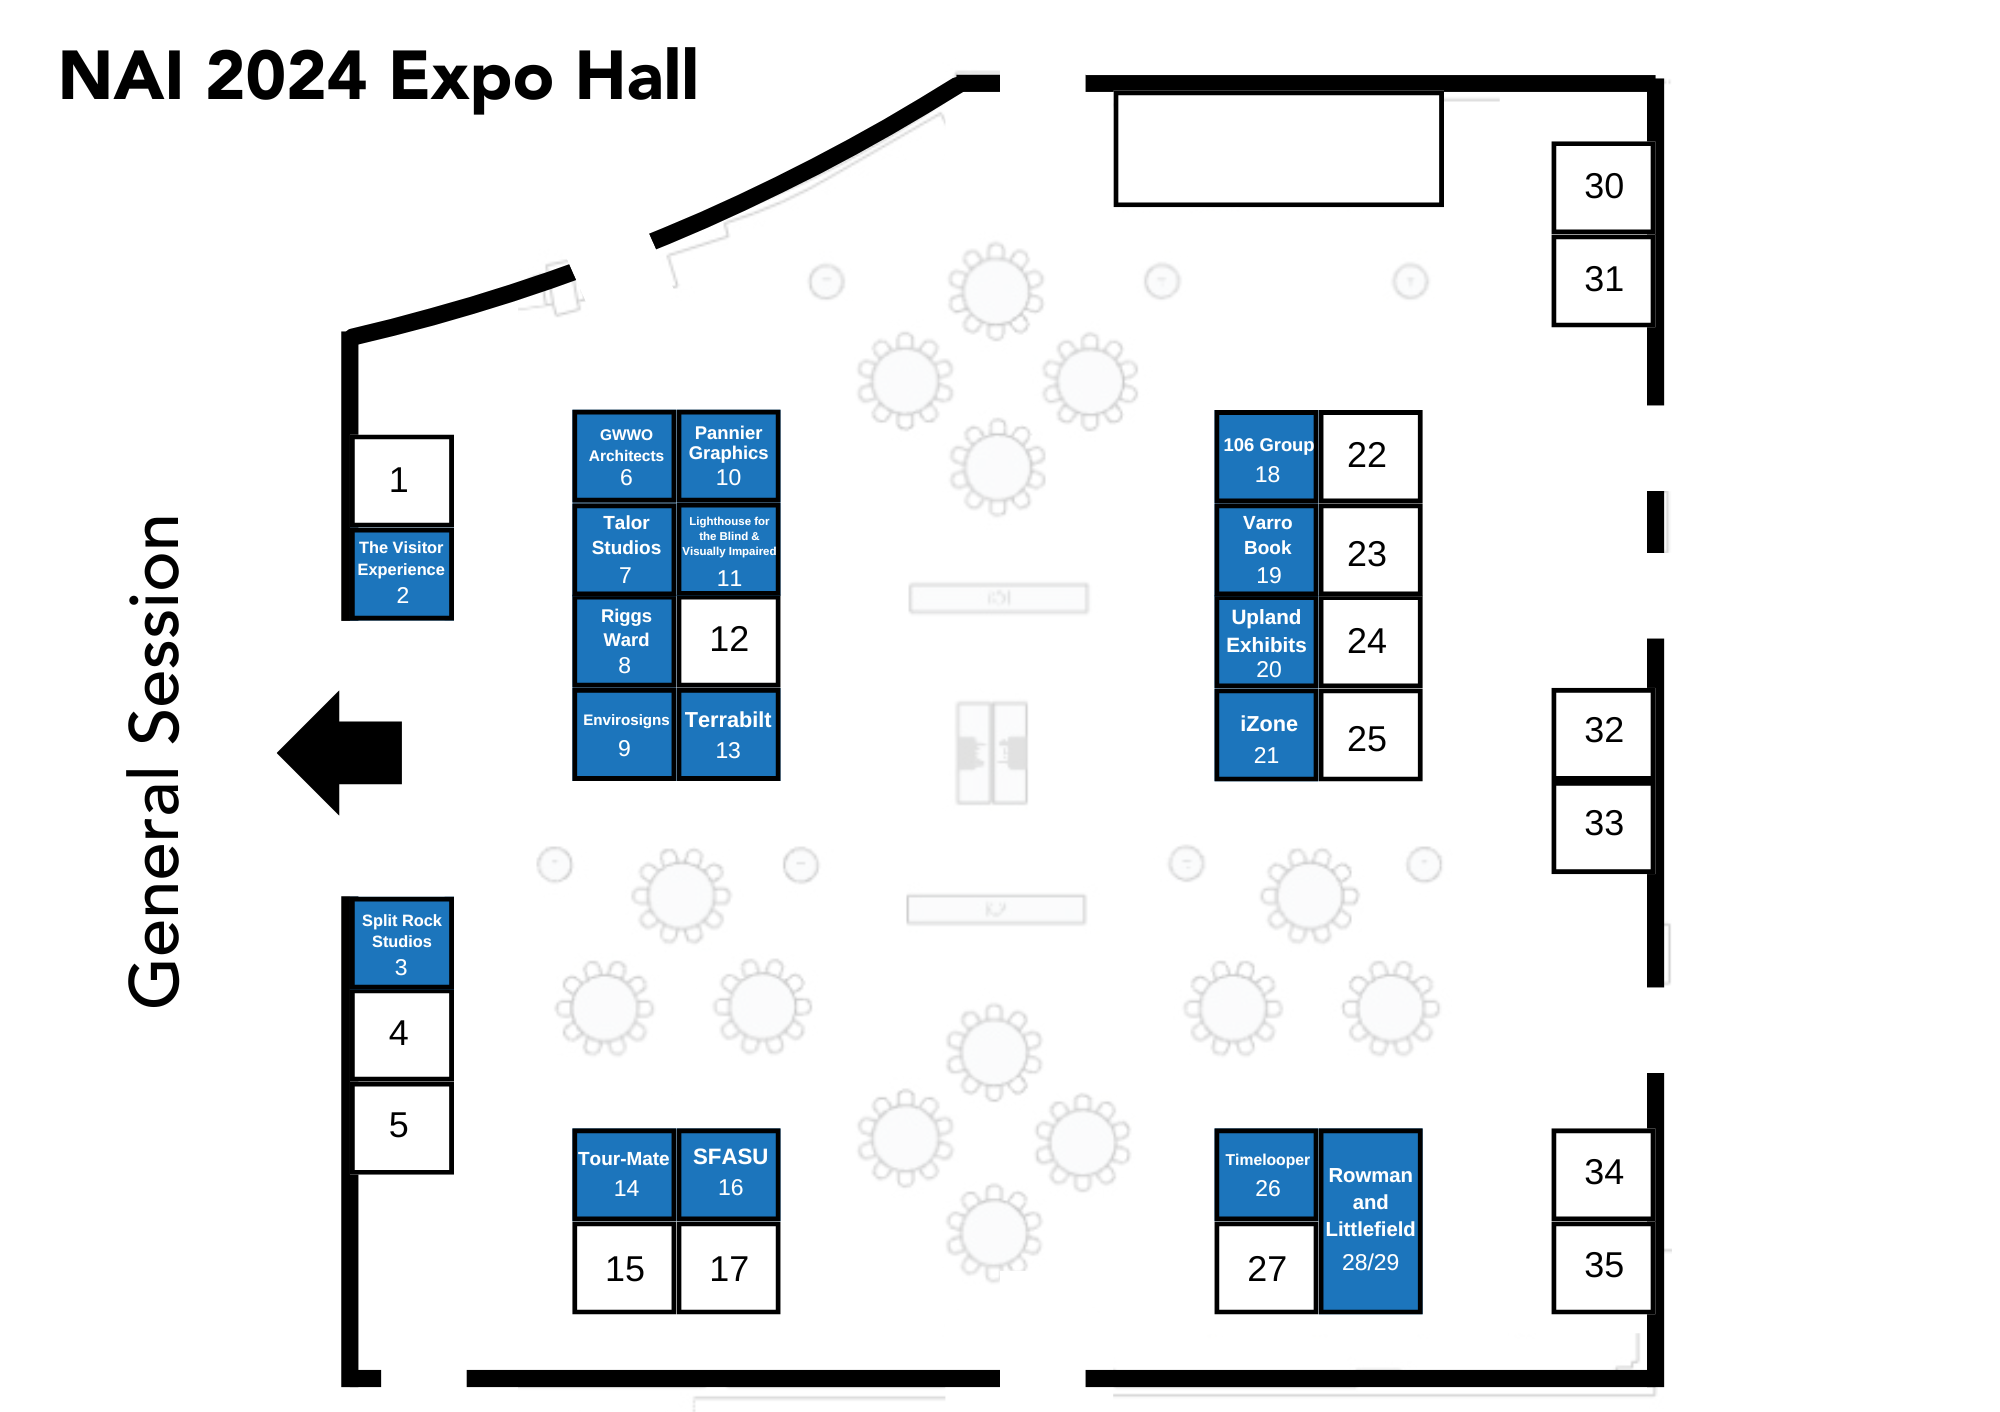 Expo Hall Map